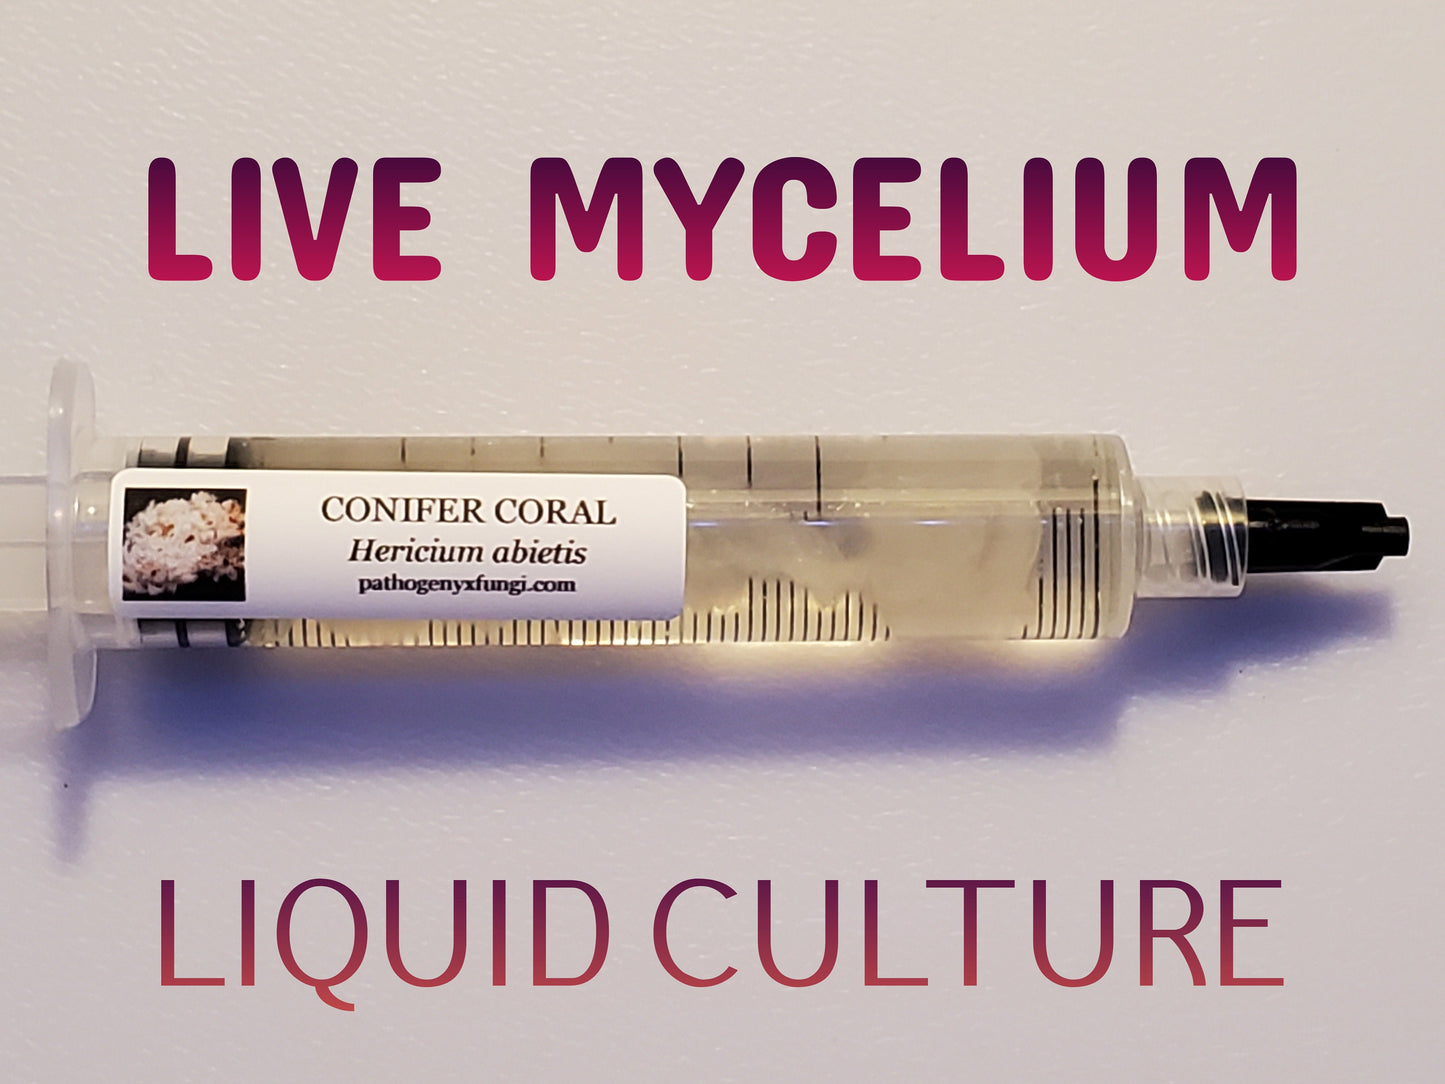 CONIFER CORAL Mushroom, liquid culture syringe, Premium Mycelium™